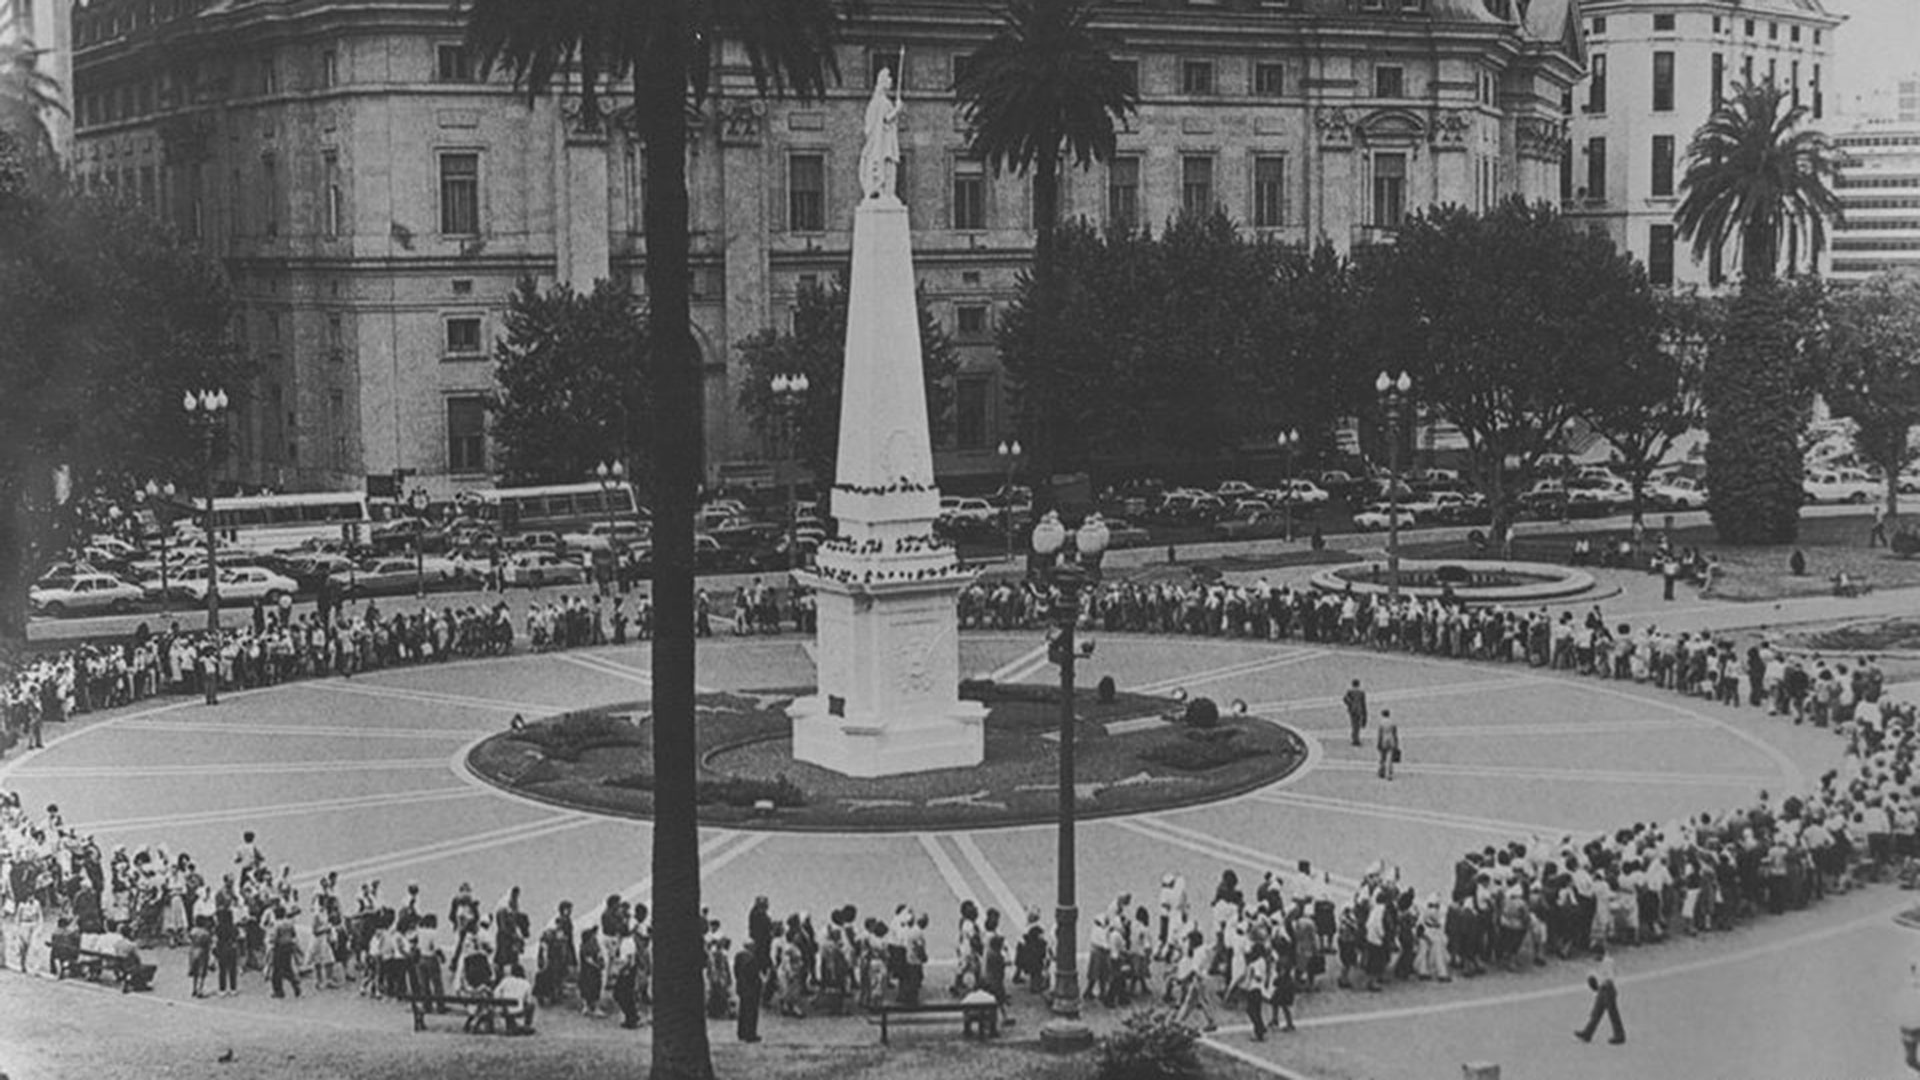 Se encontraron por primera vez un sábado, en la Plaza de Mayo, después pasaron a los jueves; los dictadores se referían a ellas peyorativamente como las "locas de la plaza"